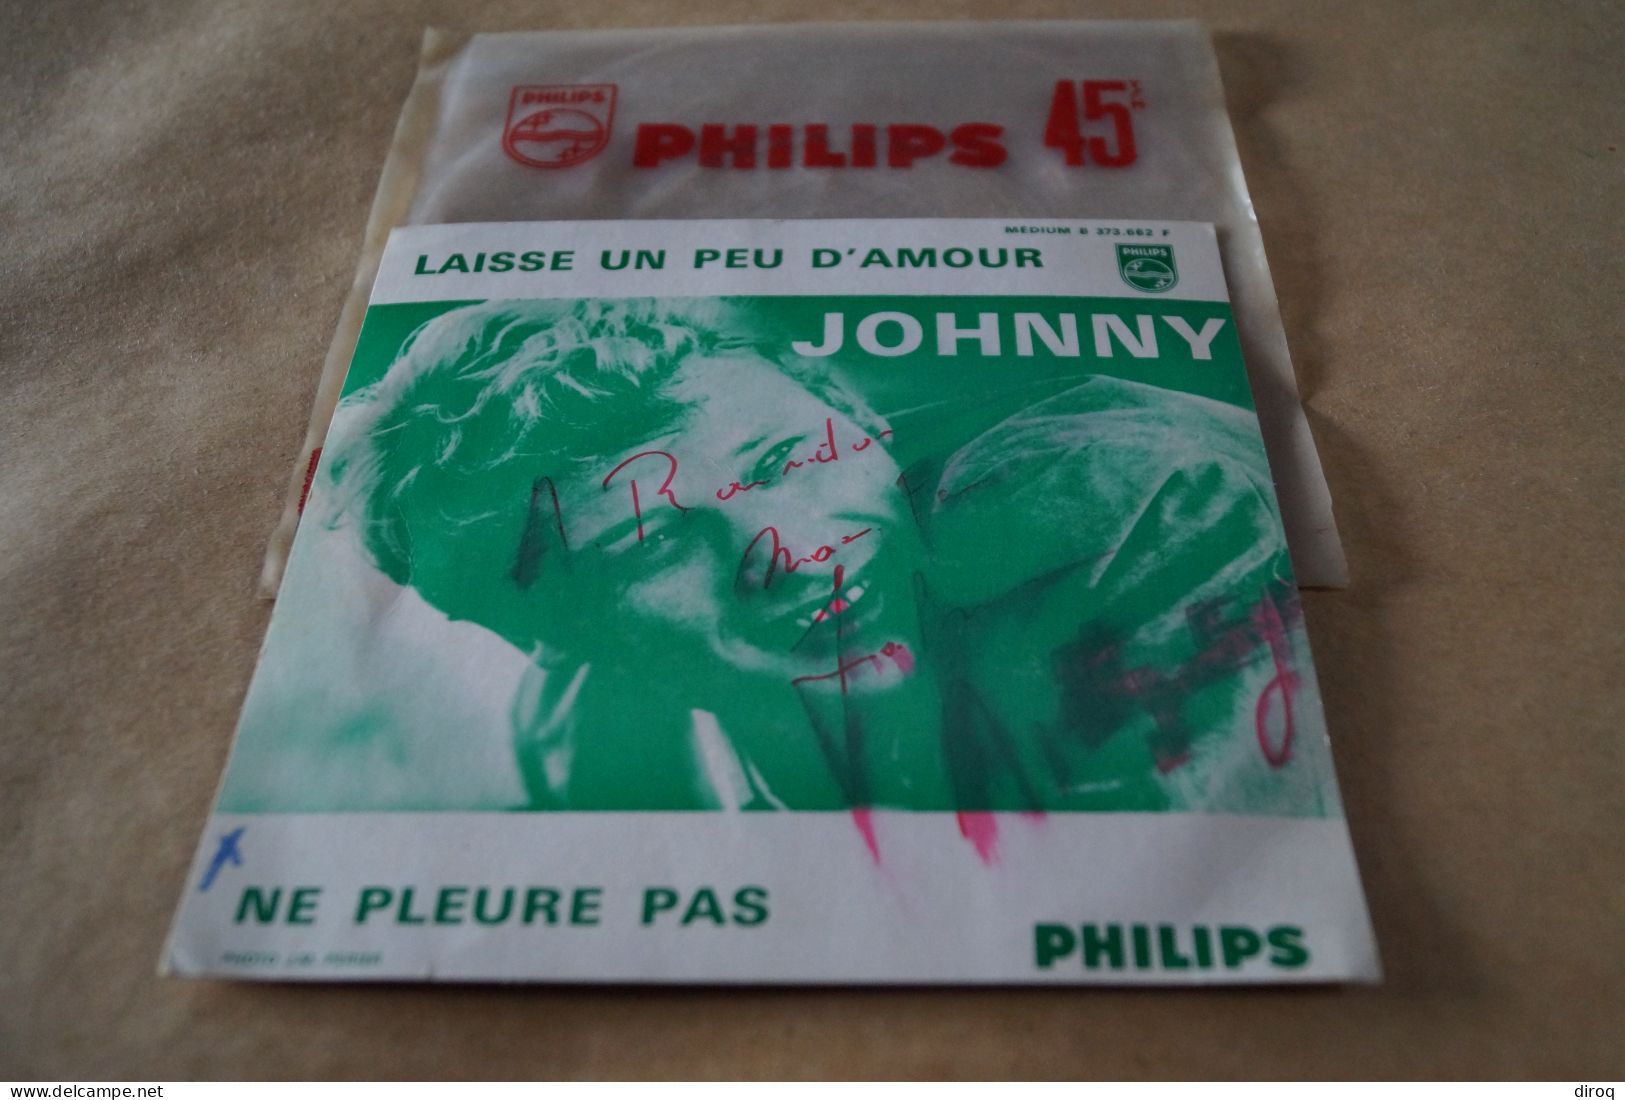 RARE 45 T.de Johnny Halliday Dédicacé,BE373.662.F,pour Collection - Autres - Musique Française